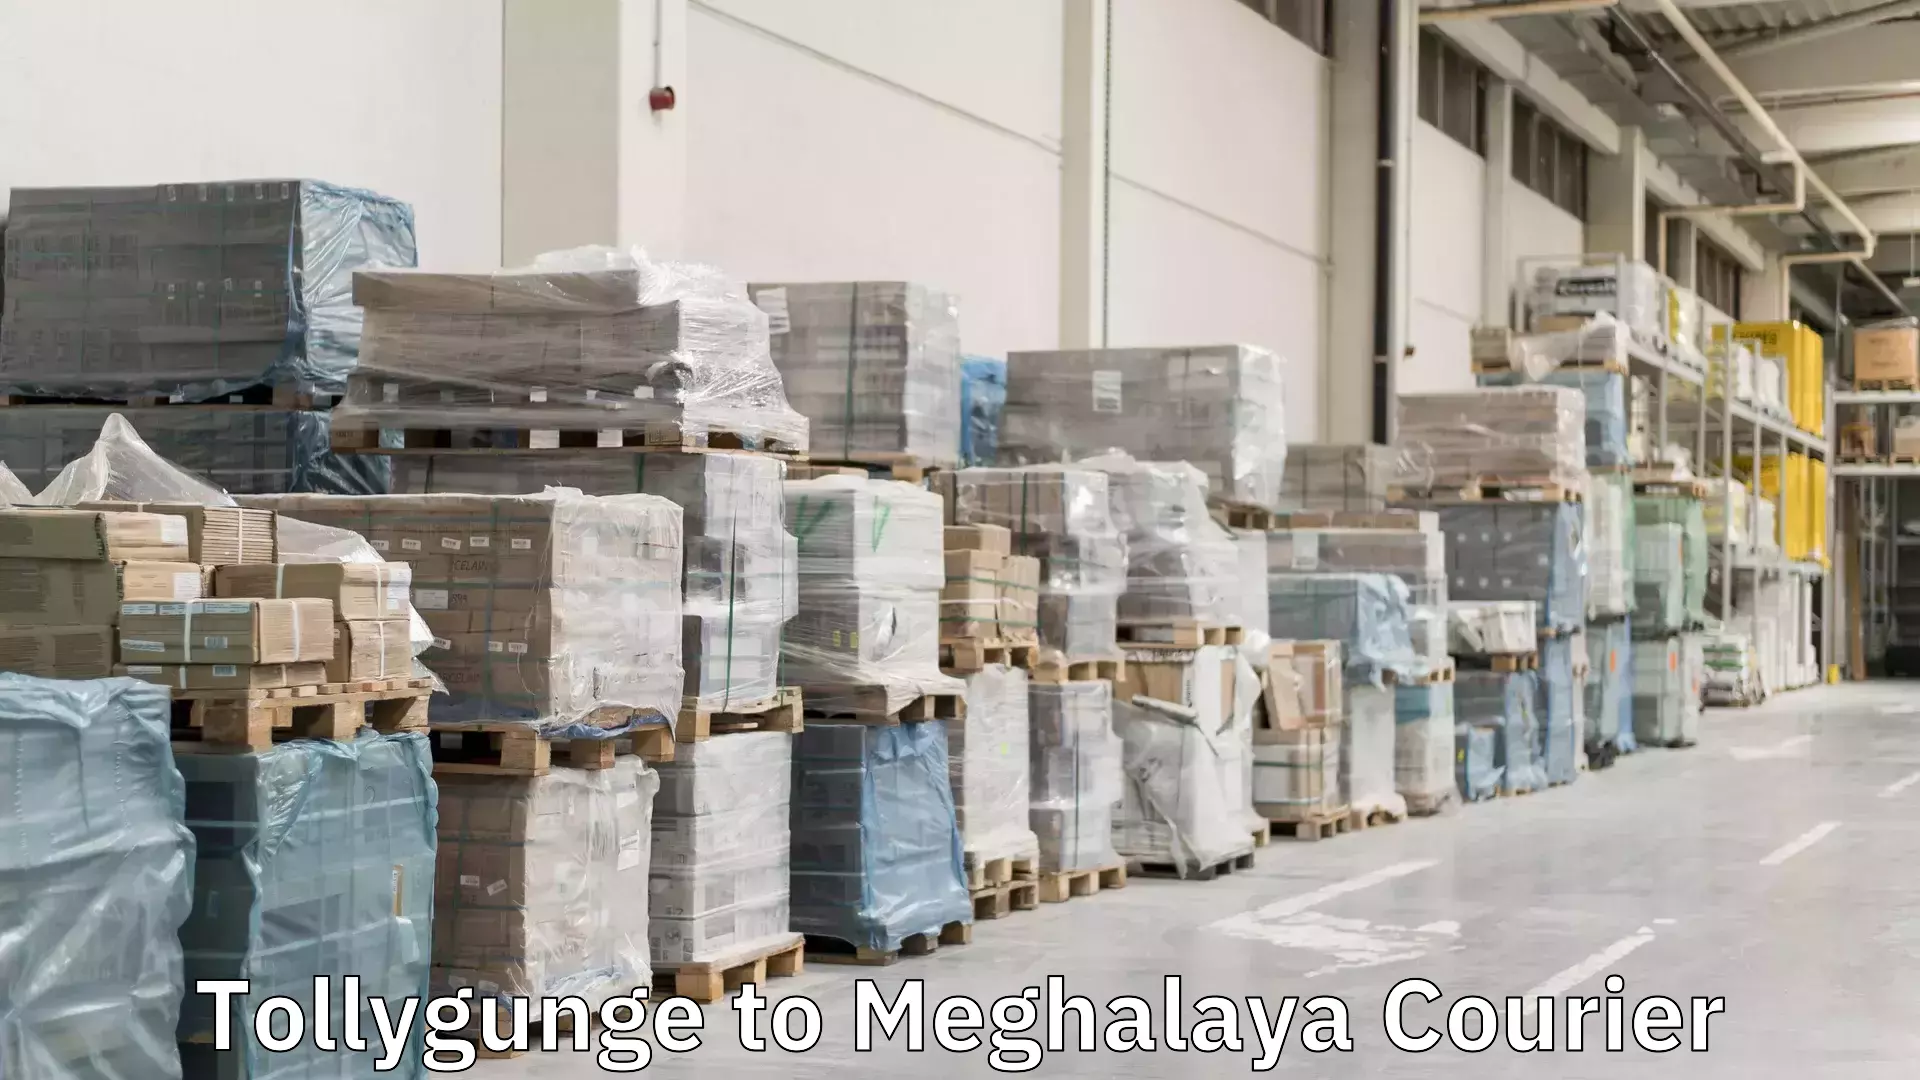 Express logistics service Tollygunge to Meghalaya